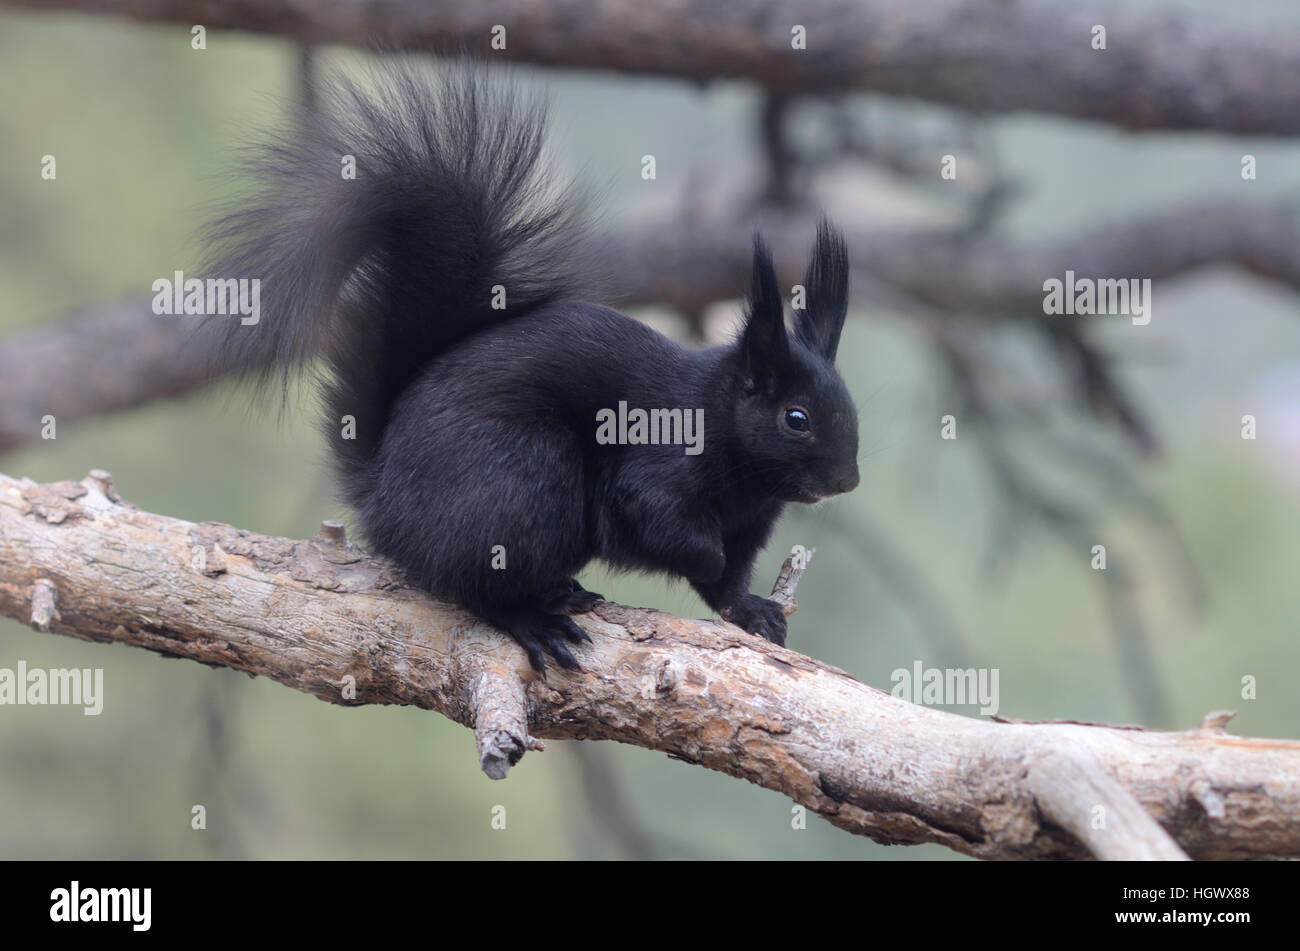 Abert's Squirrel, Sciurus aberti ferreus Stock Photo